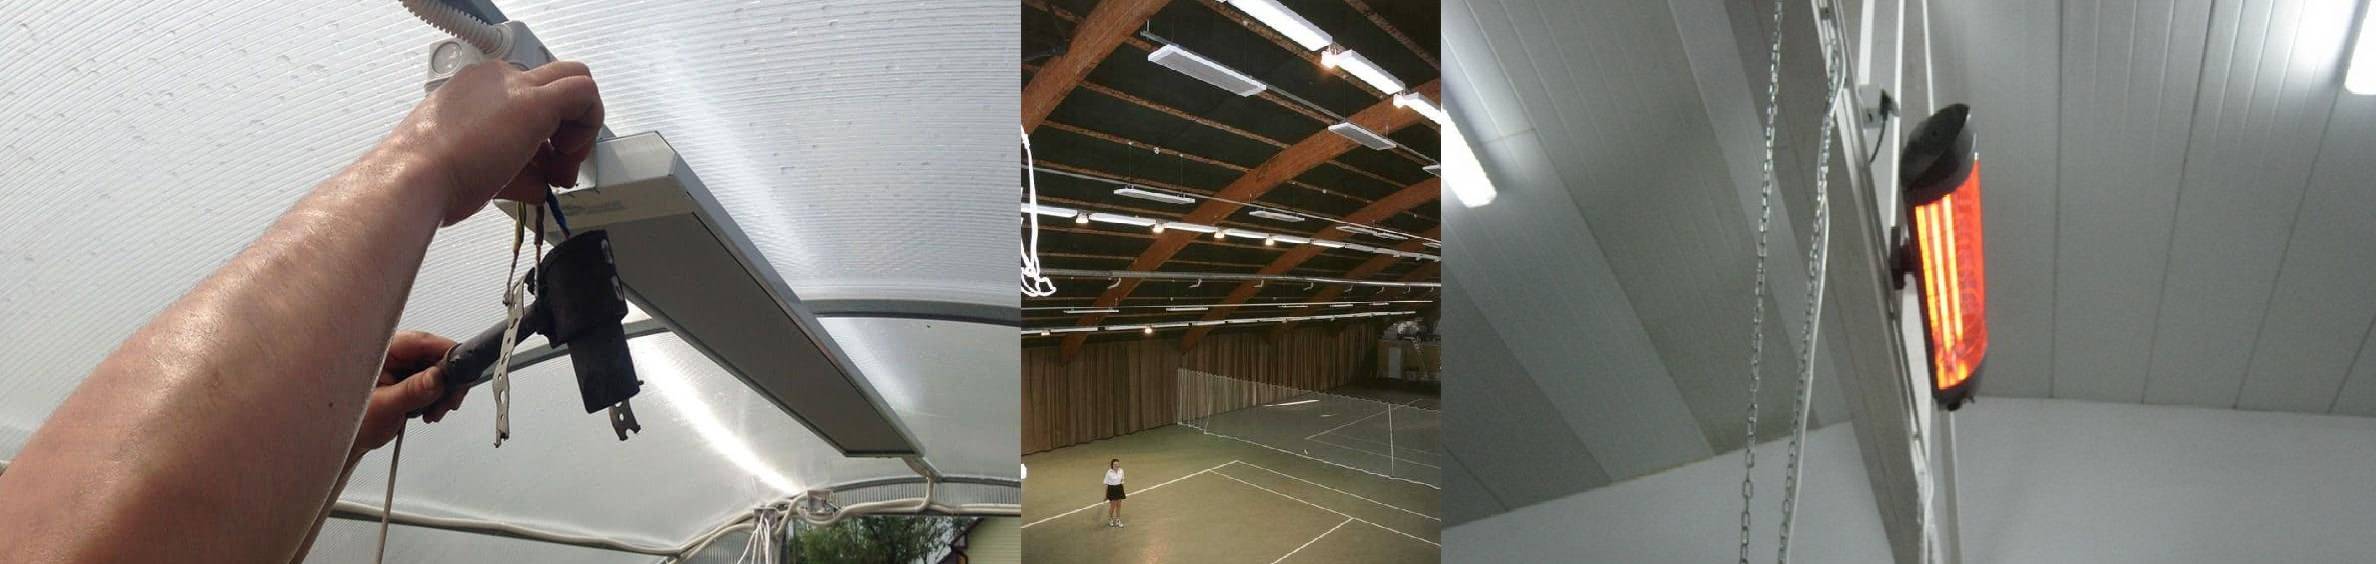 Как правильно повесить инфракрасный обогреватель на потолок?